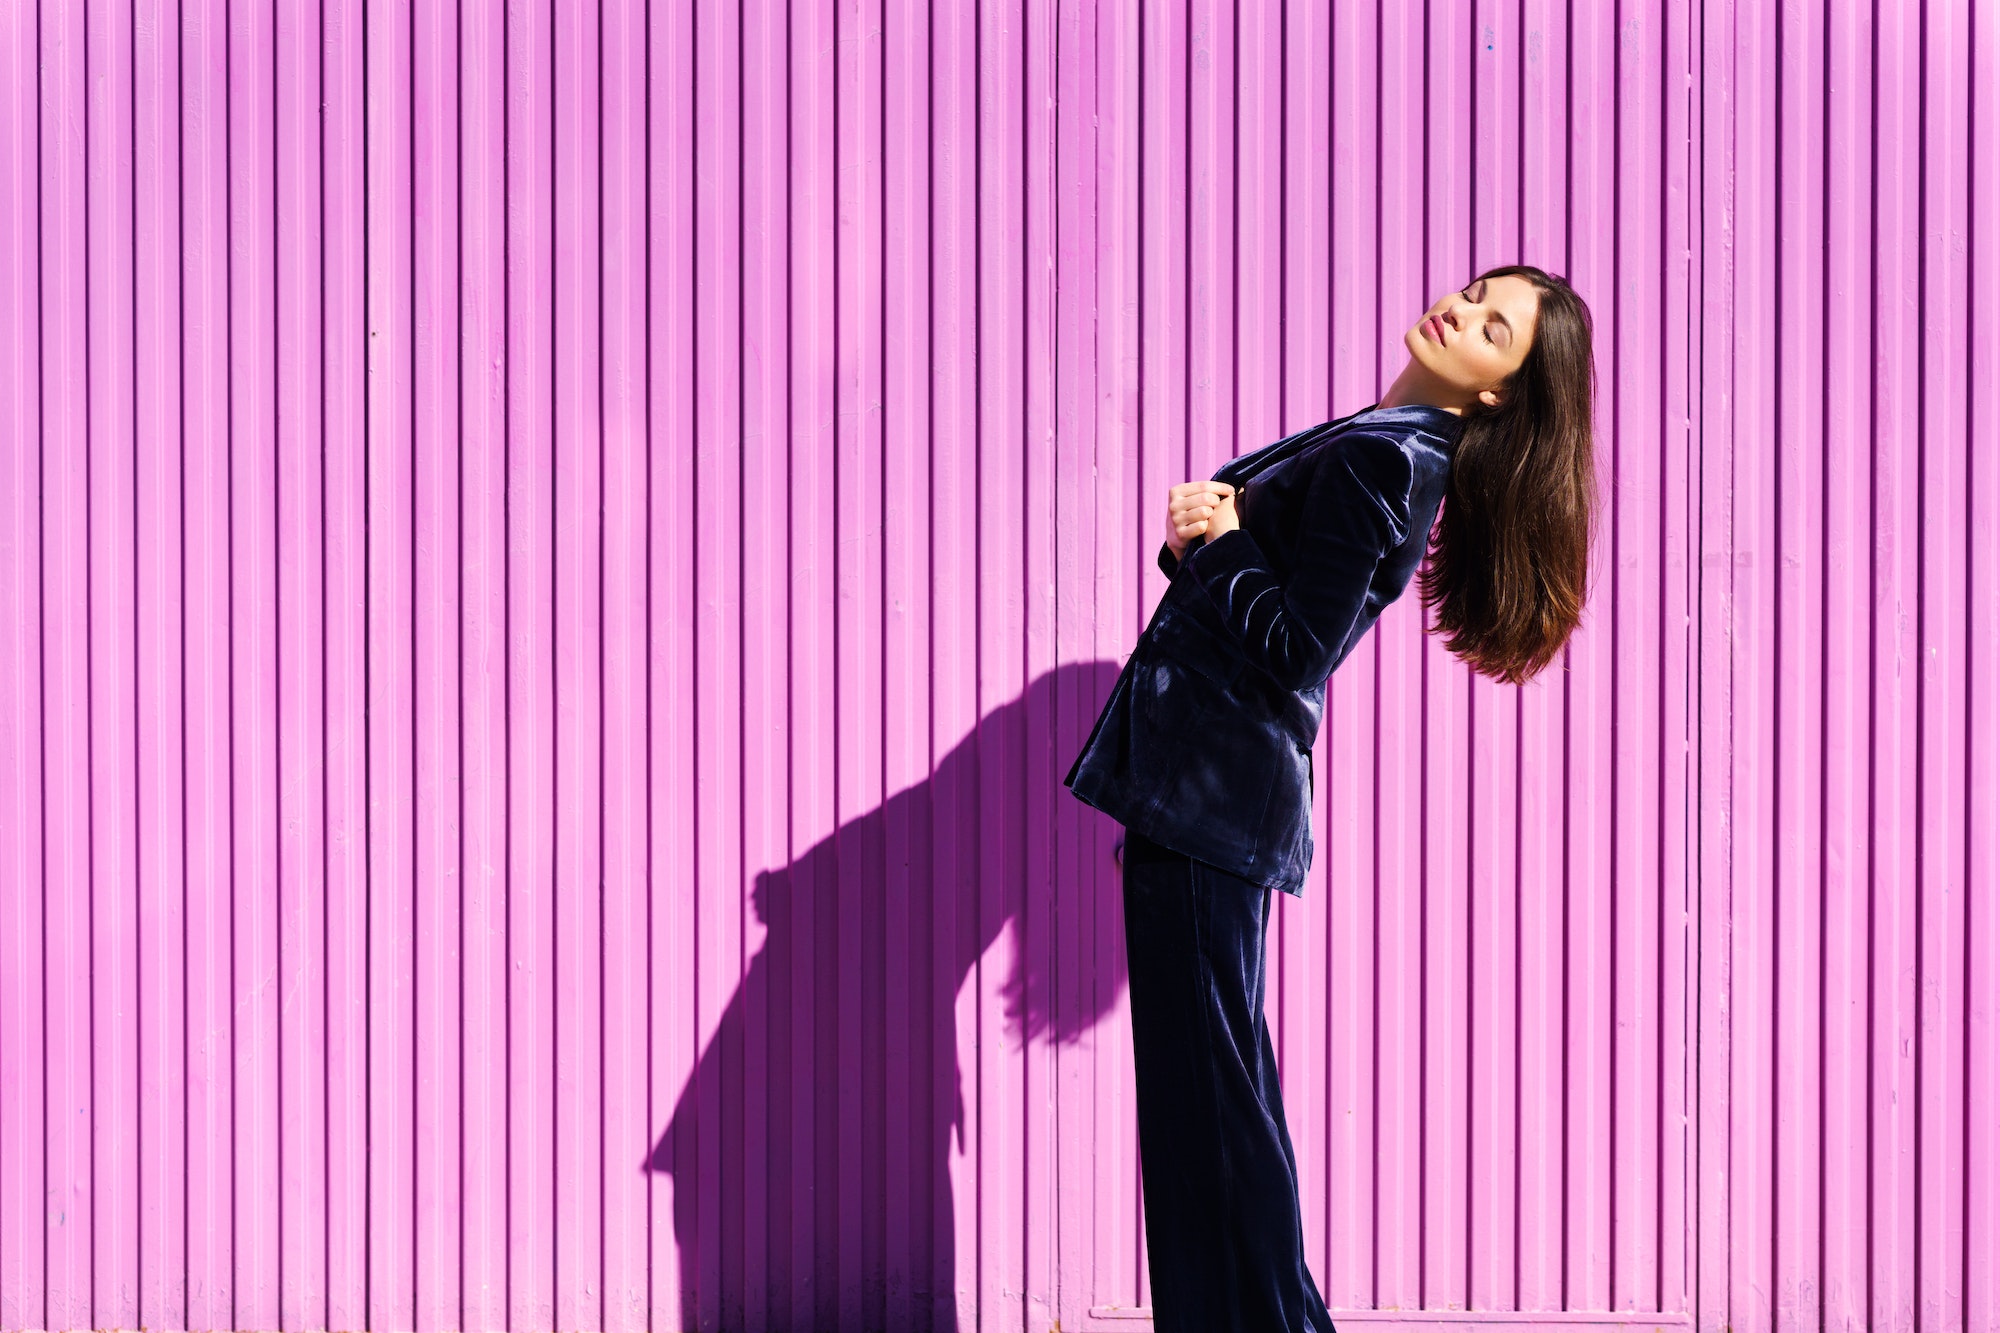 Woman wearing blue suit posing near pink shutter